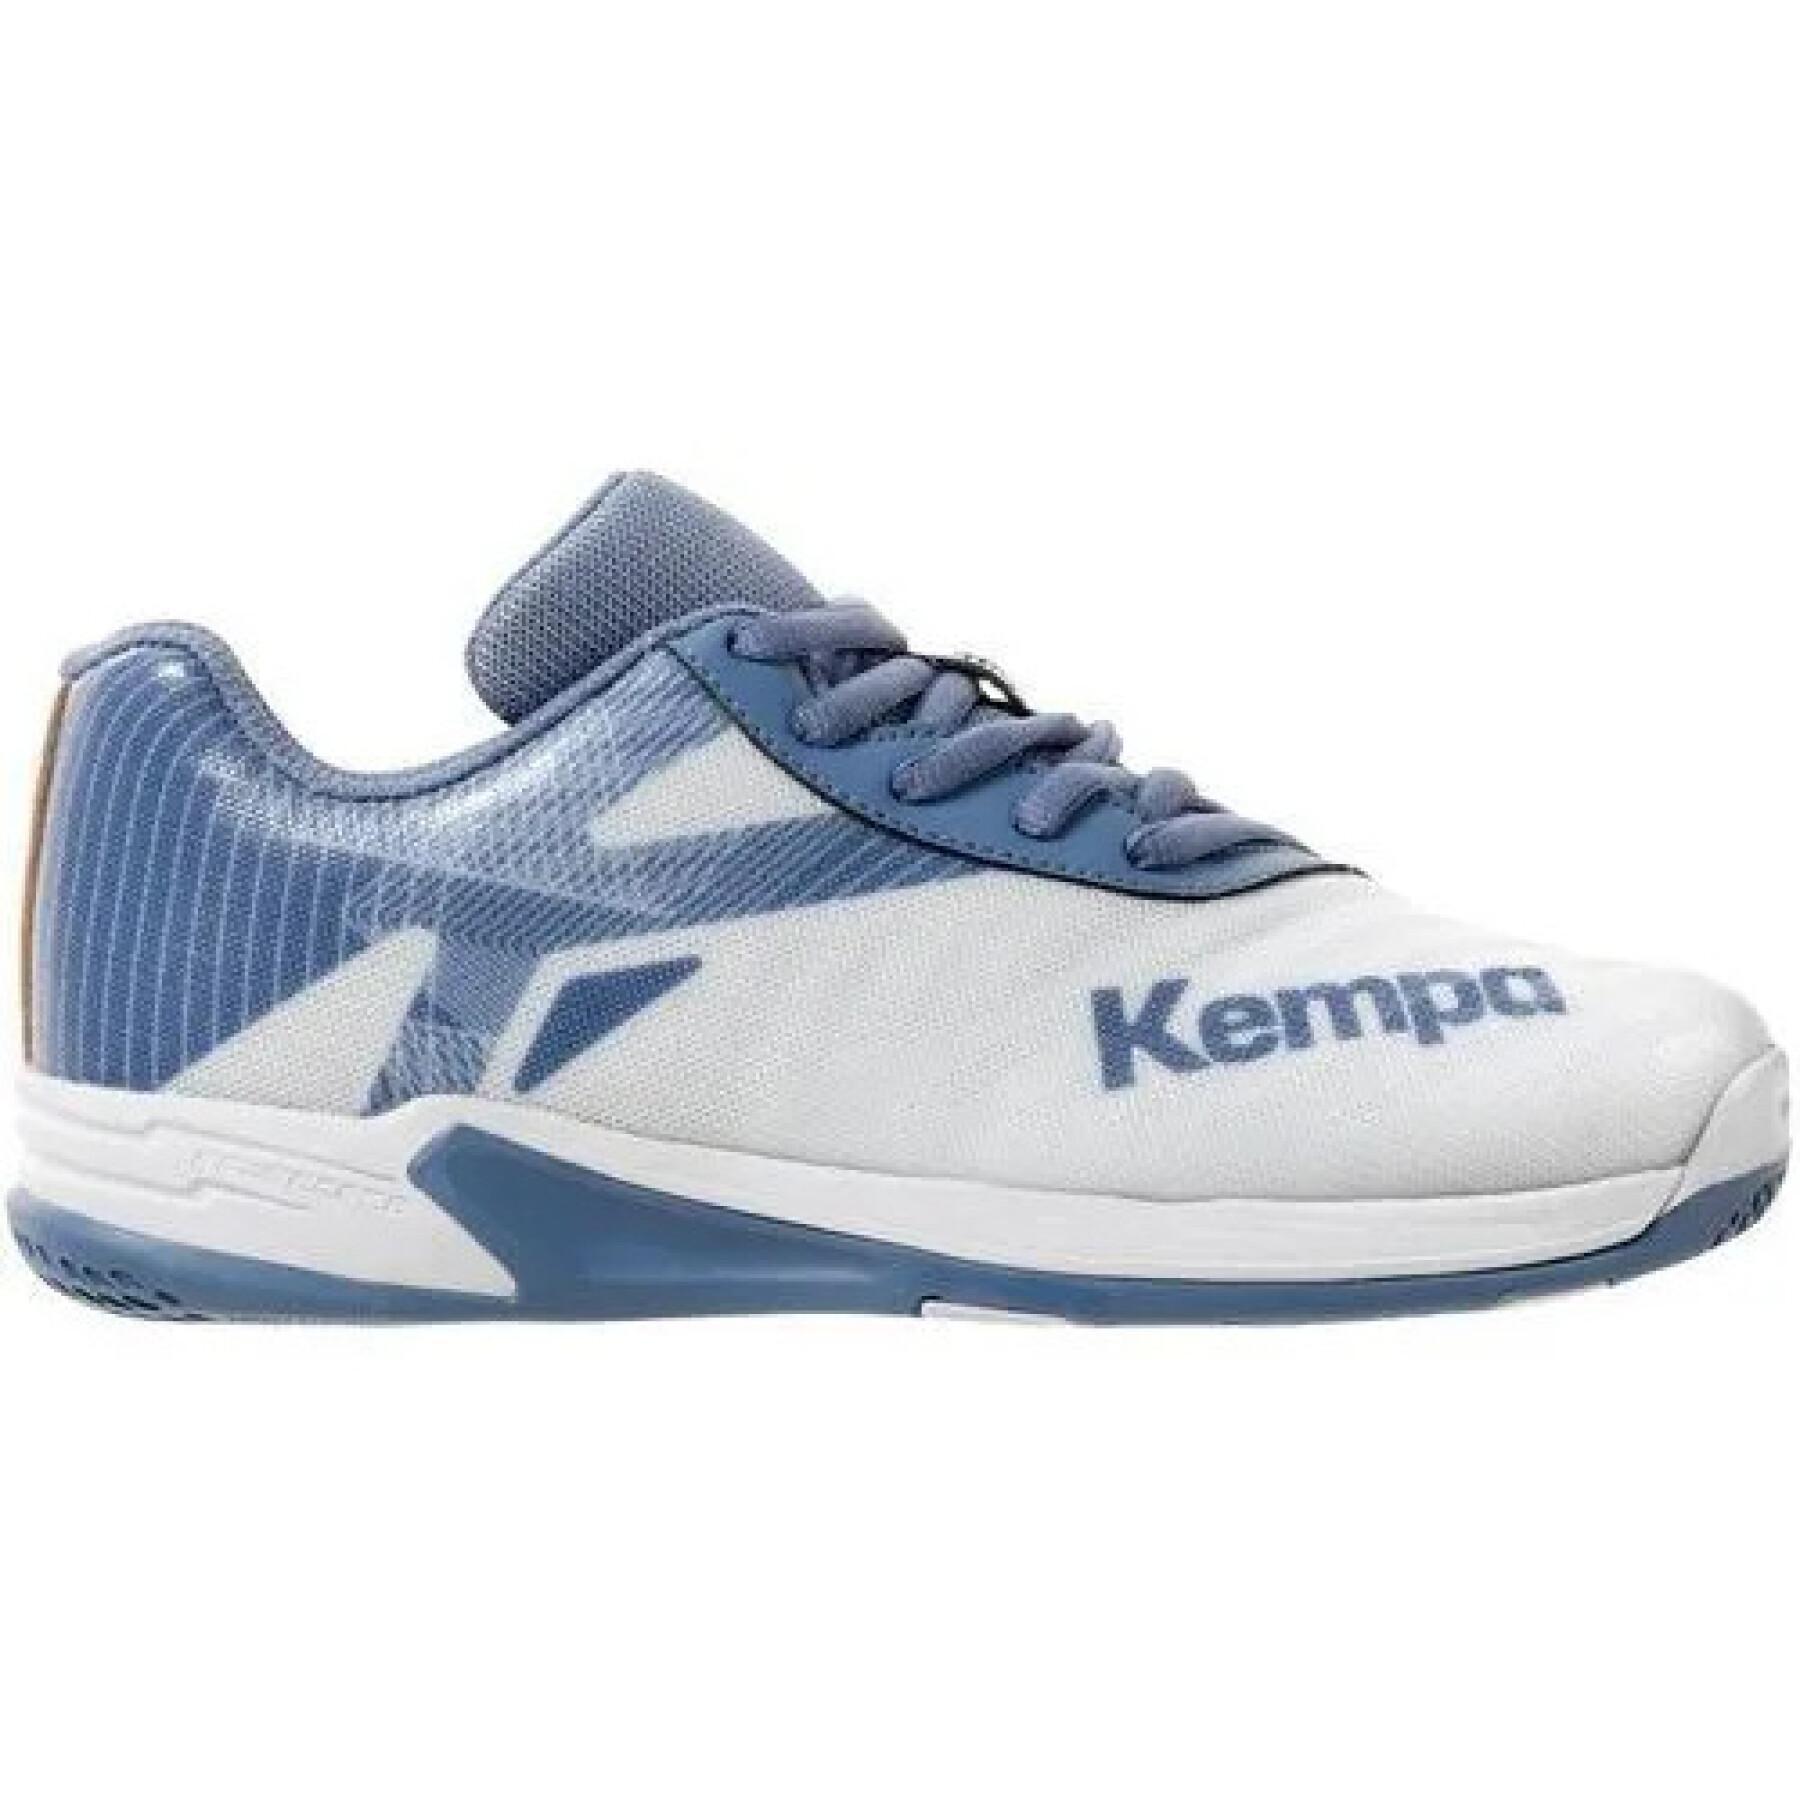 Schoenen voor kinderen Kempa